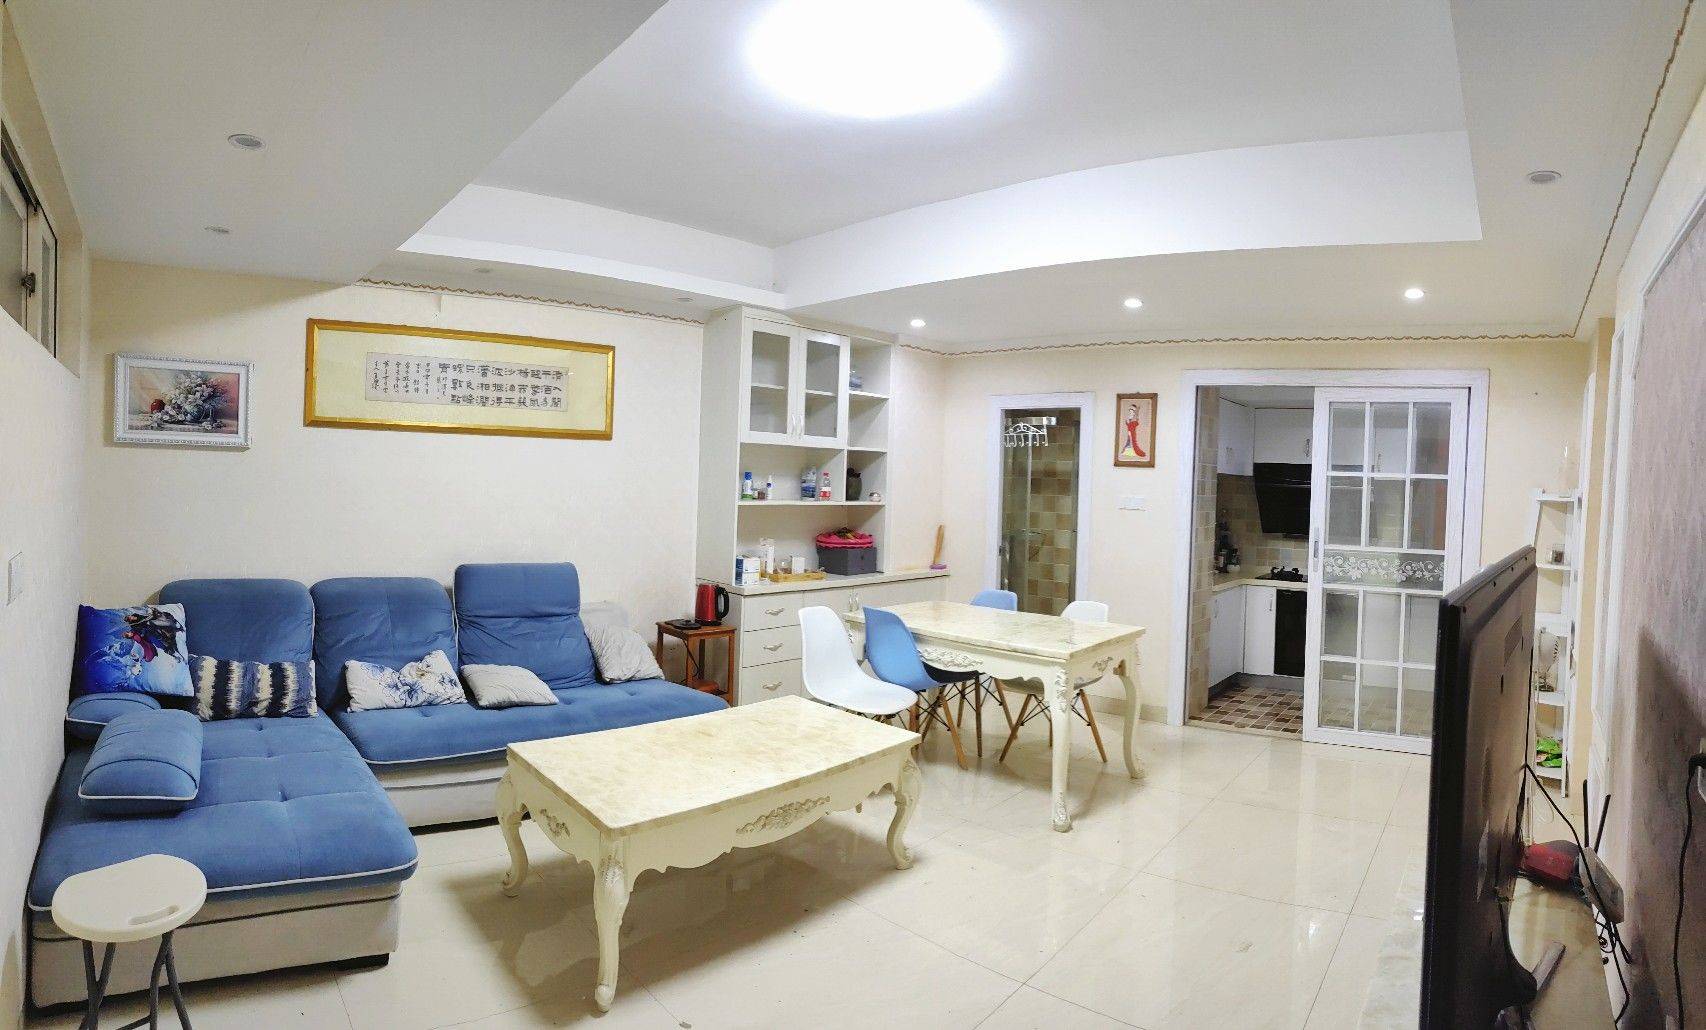 Xiamen-Siming-Cozy Home,Clean&Comfy,No Gender Limit,Hustle & Bustle